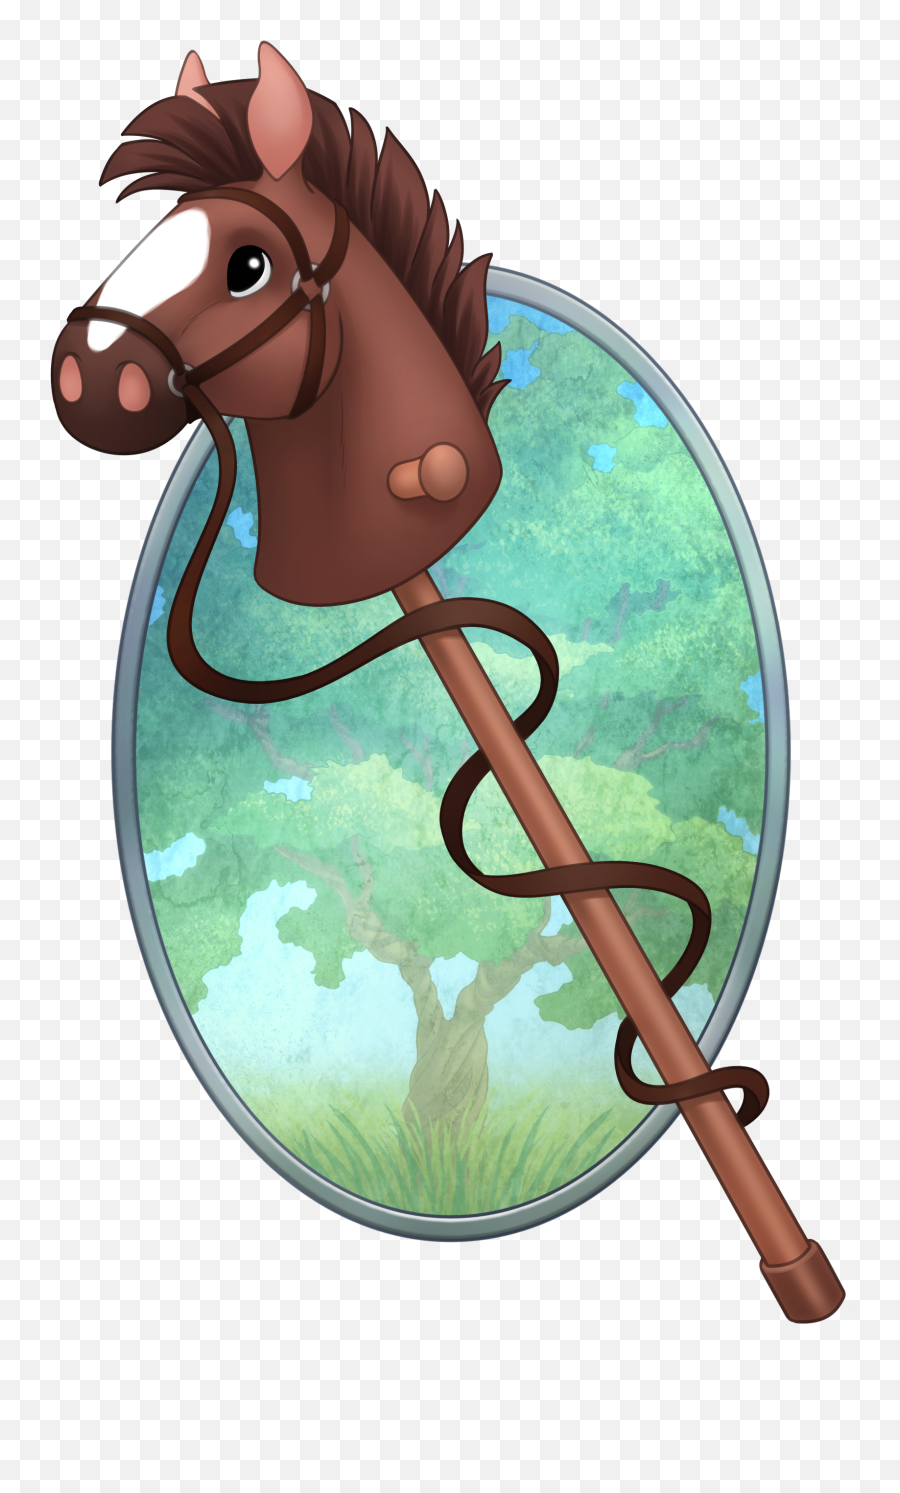 Hobbyhorselogo - Clip Art Emoji,Horse Logo